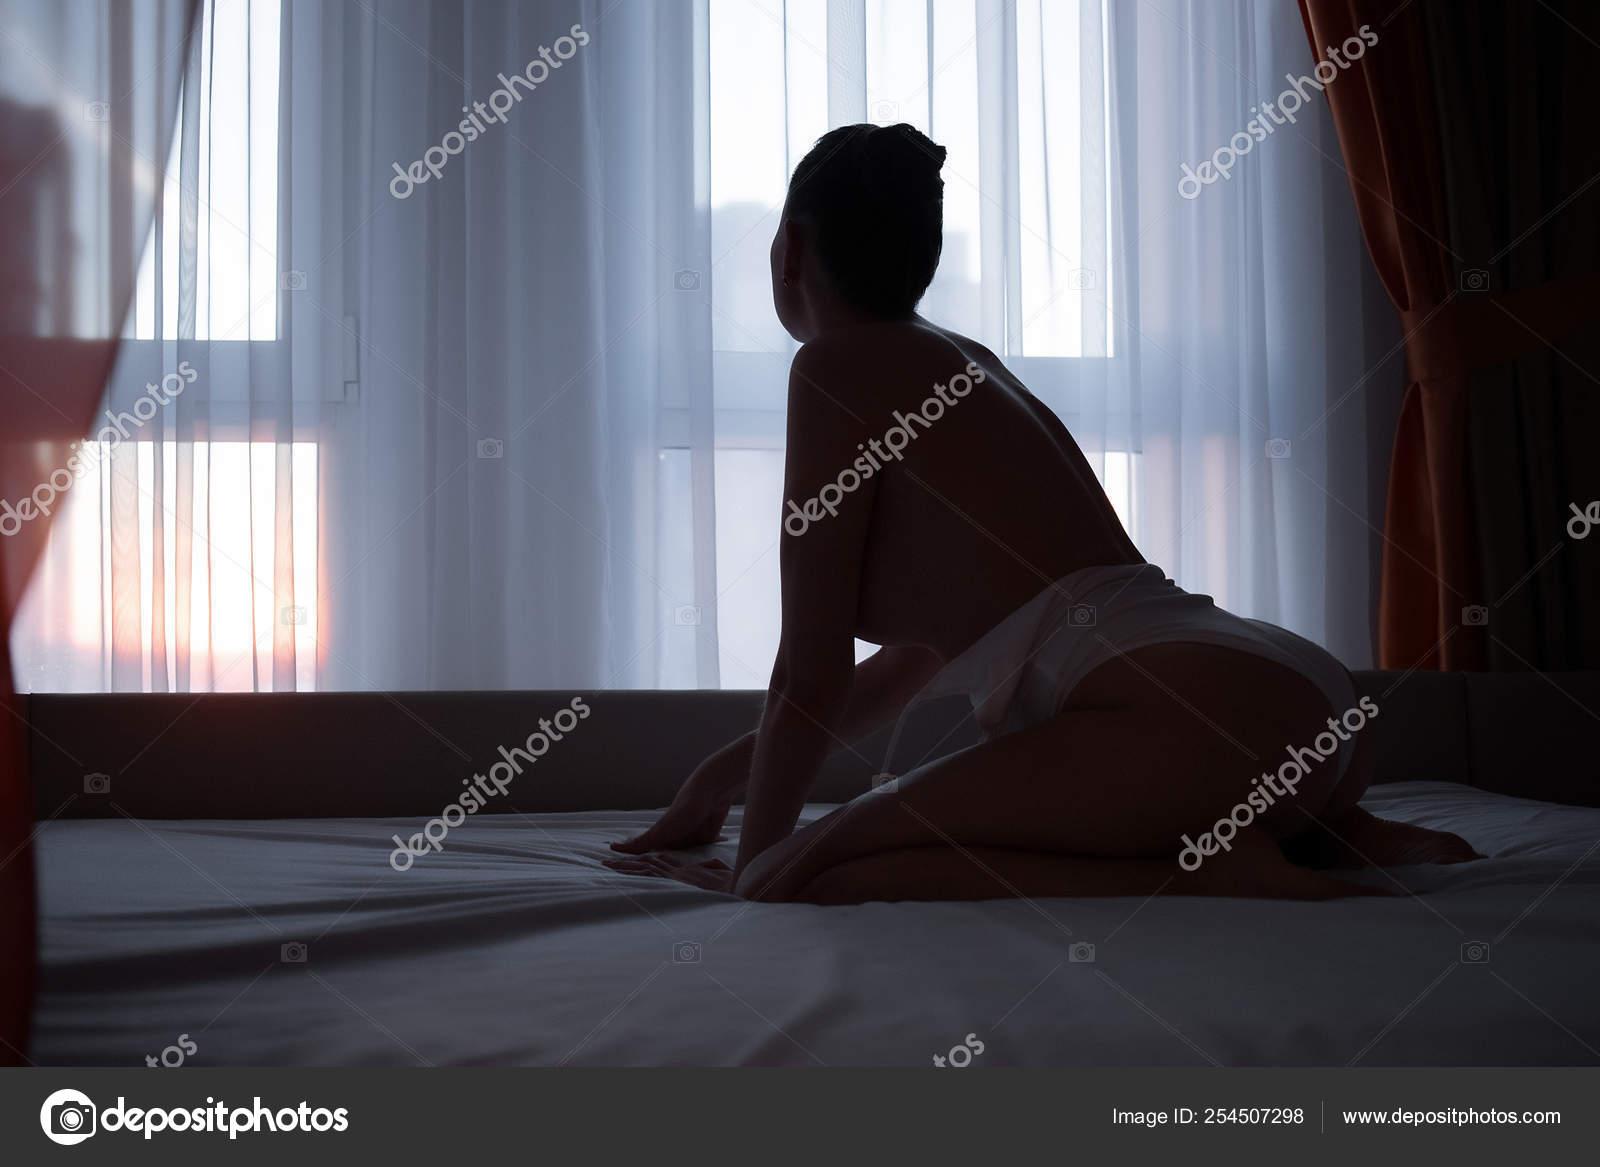 https://st4n.depositphotos.com/5034975/25450/i/1600/depositphotos_254507298-stock-photo-young-sensual-naked-woman-posing.jpg